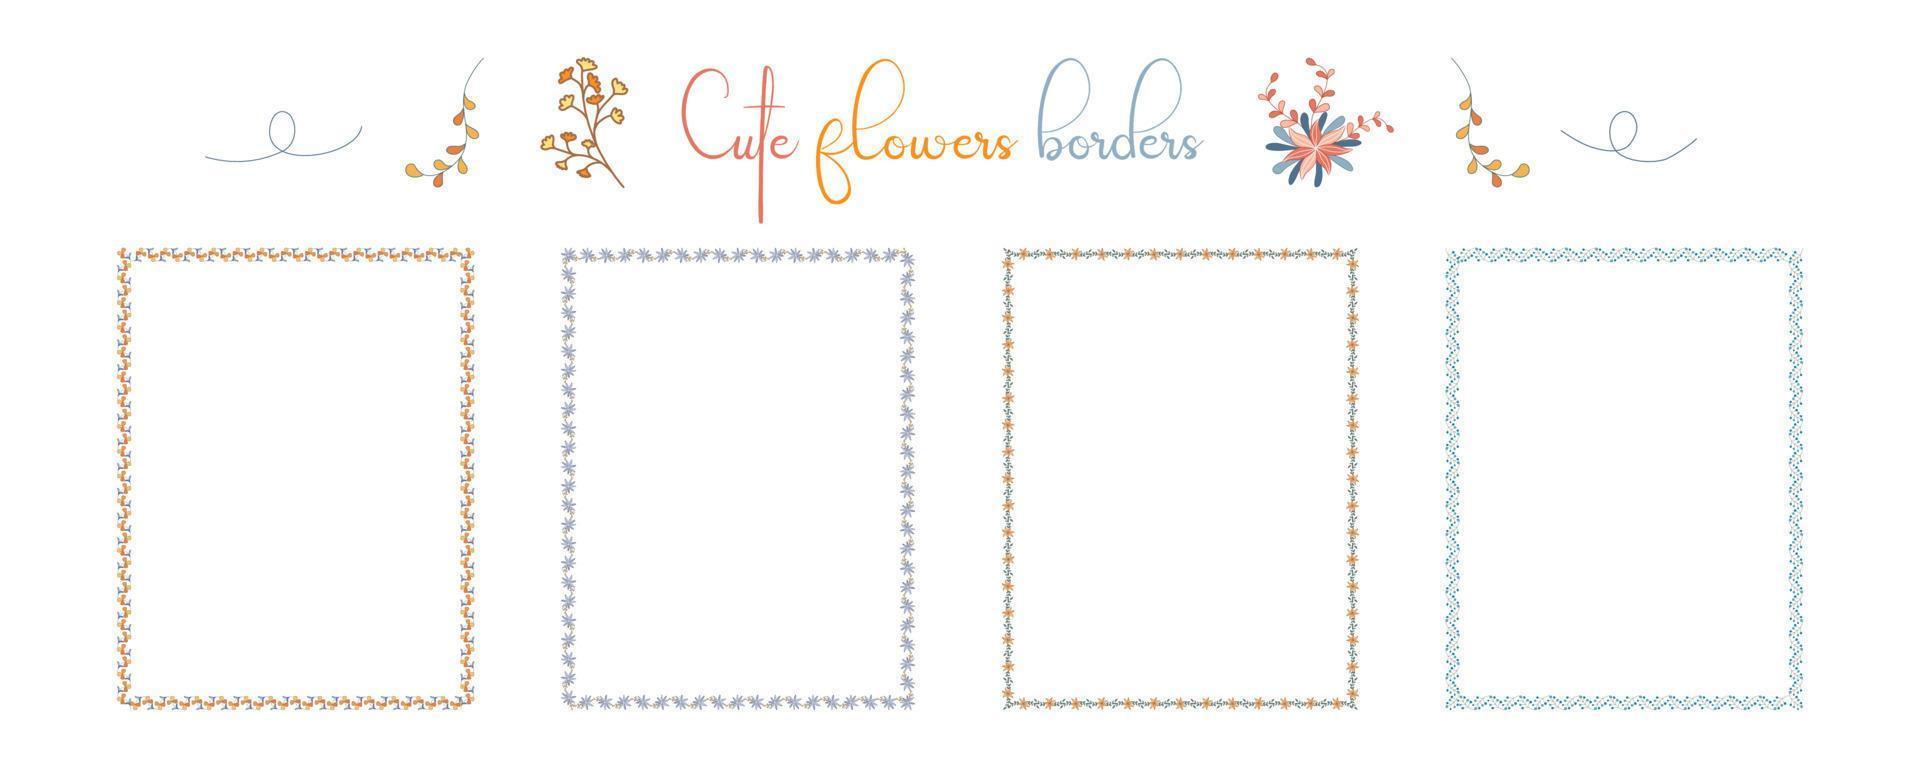 Reihe von Bordürenblumenmustern in hellen Tönen auf weißem Hintergrund für Verzierungen, Karten, Sammelalben, Rahmen, Papierdekorationen, Hochzeiten und mehr. vektor